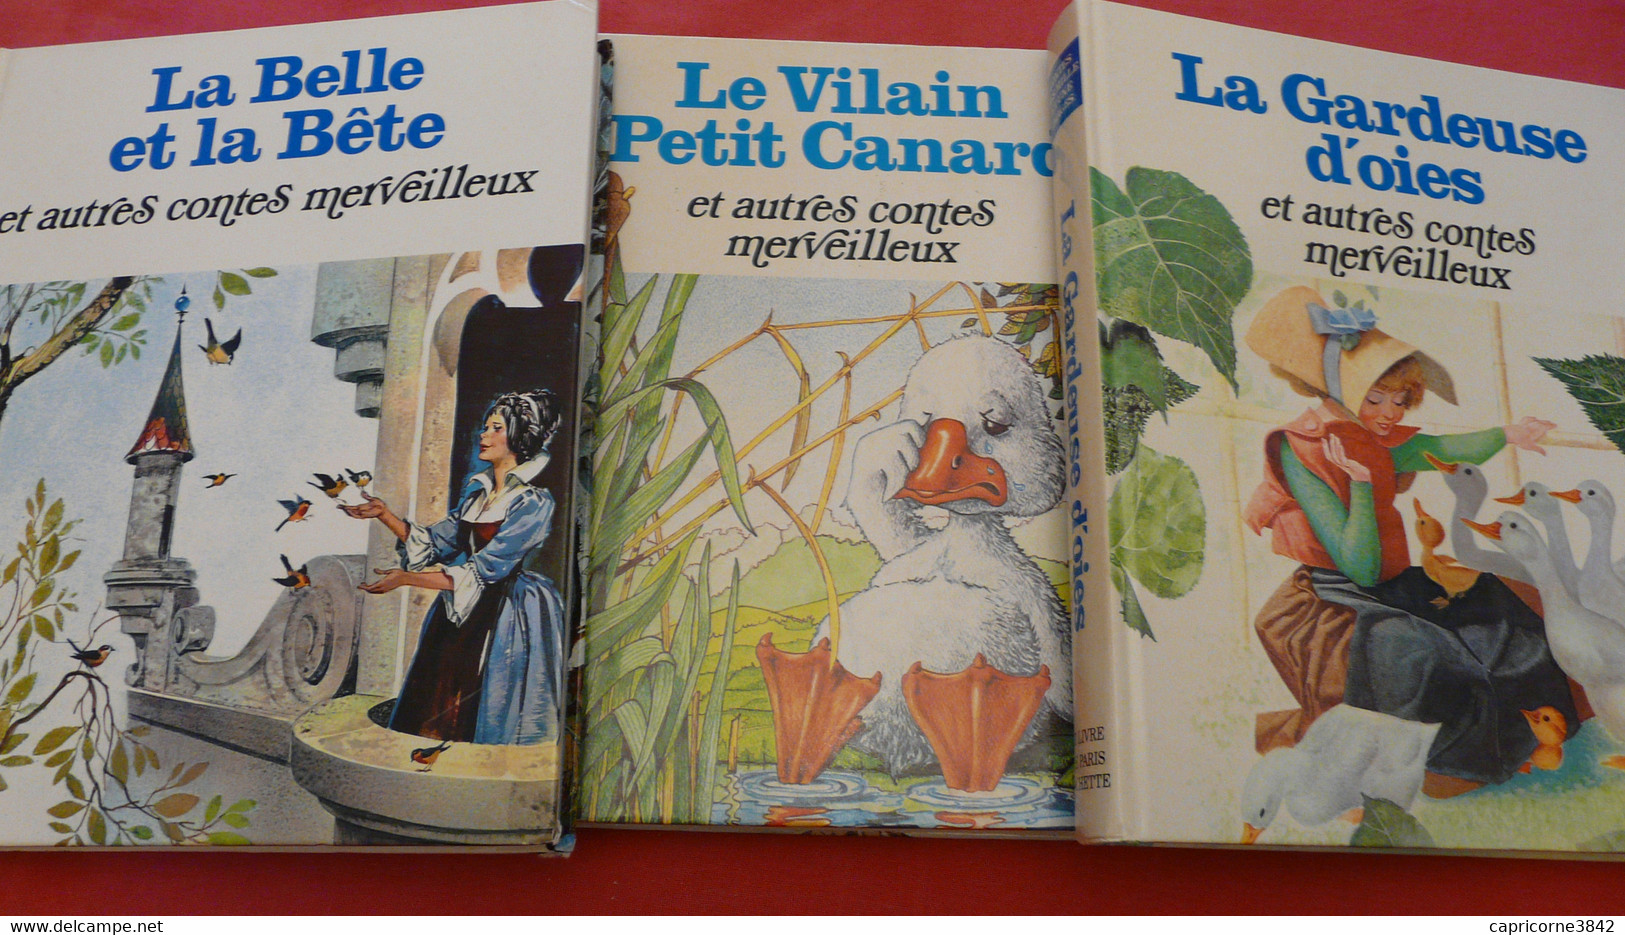 3 Beaux Livres De Contes LA GARDEUSE D'OIES - LE VILAIN PETIT CANARD - LA BELLE ET LA BÊTE - Env. 15 Contes Par Livre - Märchen